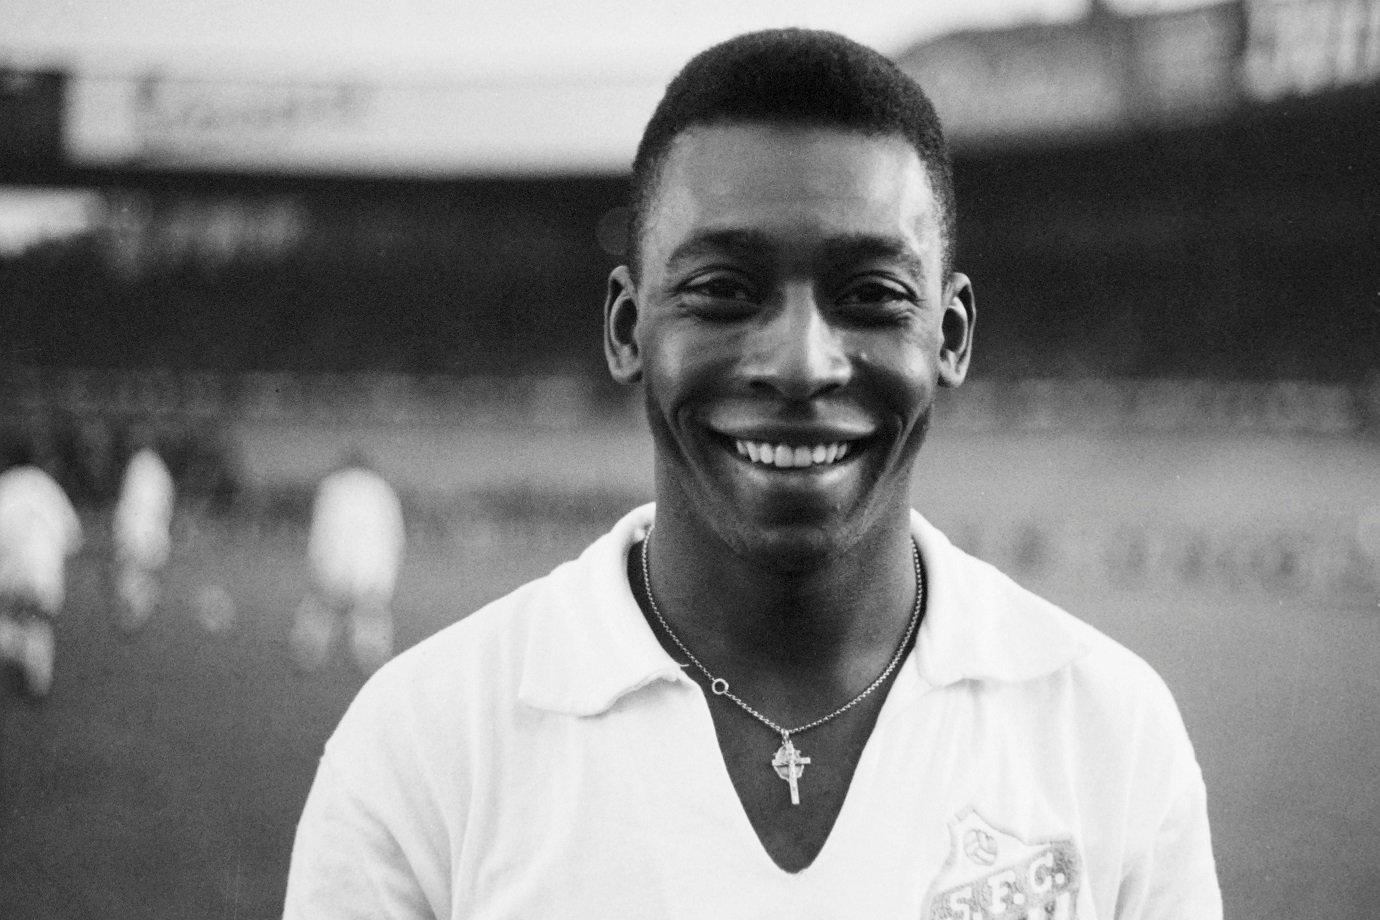  Pelé ha avuto una fortuna considerata piccola nel mondo del calcio; capire perché